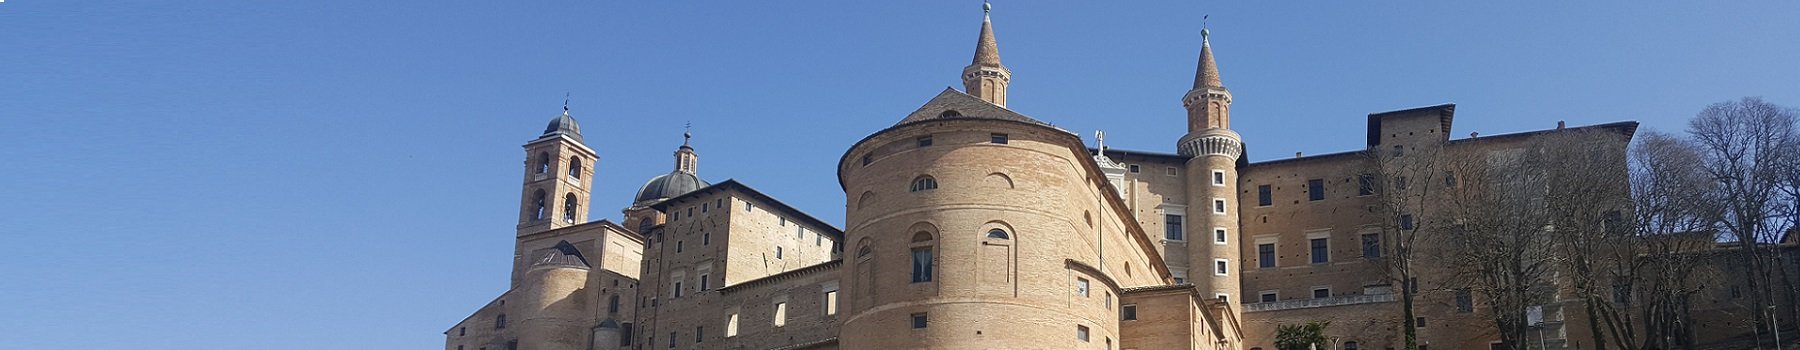 Raggiungere Urbino in Autobus da Rimini e dintorni, Riccione, Cattolica e Cesenatico